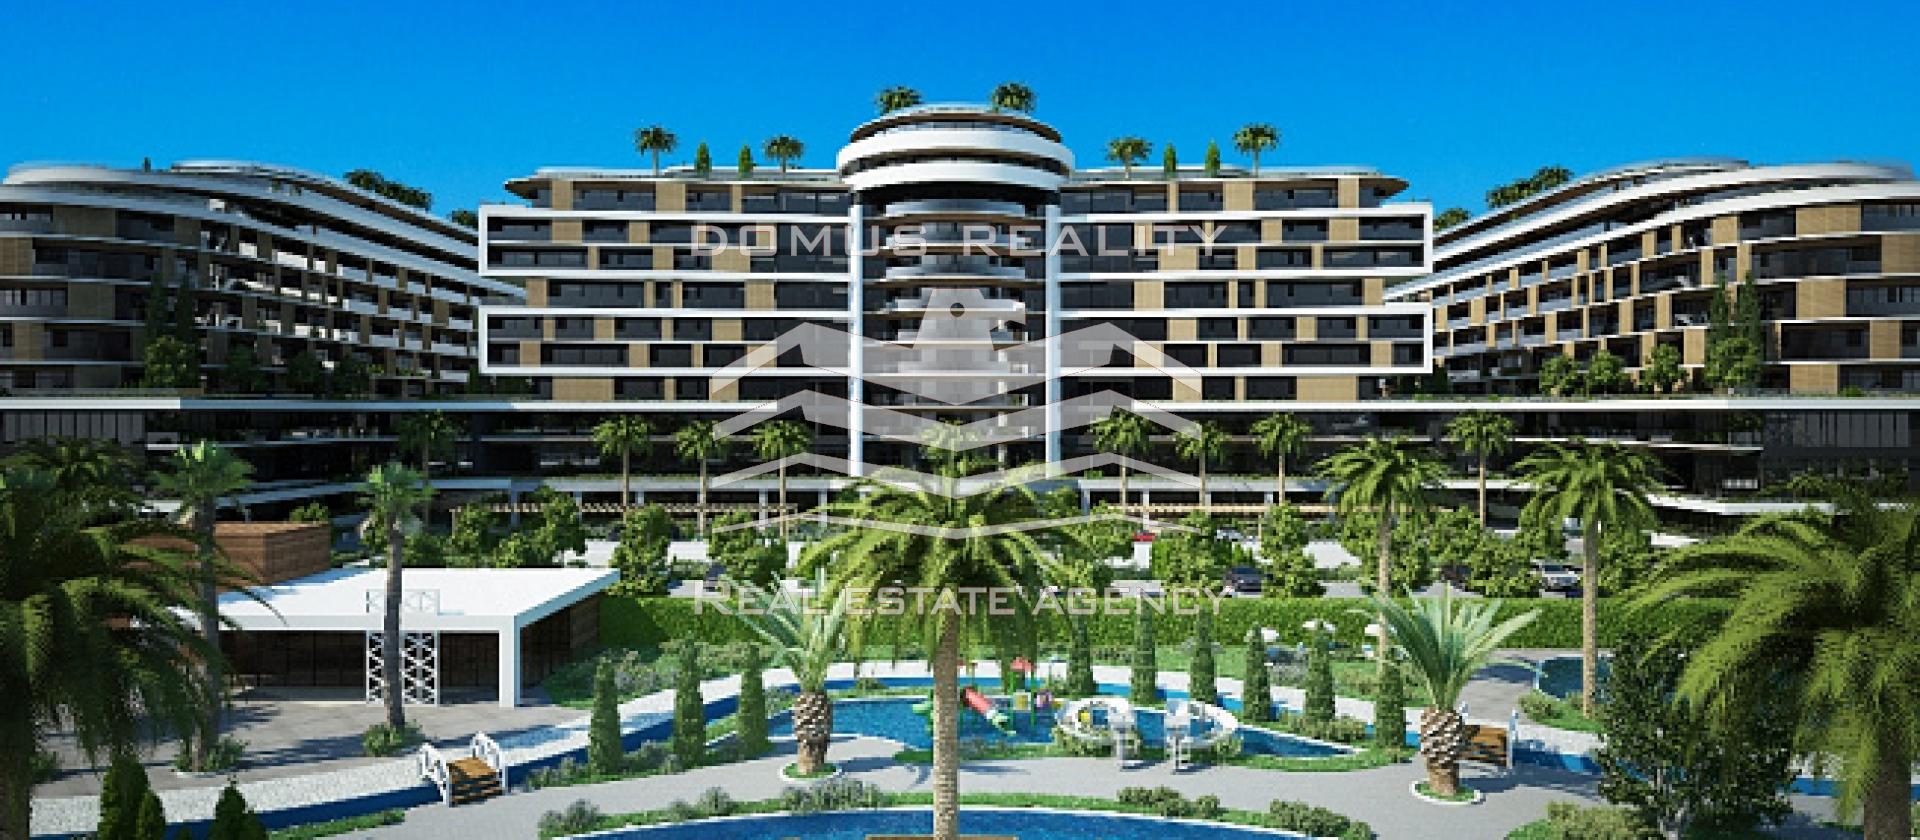 Liko Soho je první luxusní pětihvězdičkový hotel v Baru, který se nachází pouhých 100 metrů od moře.